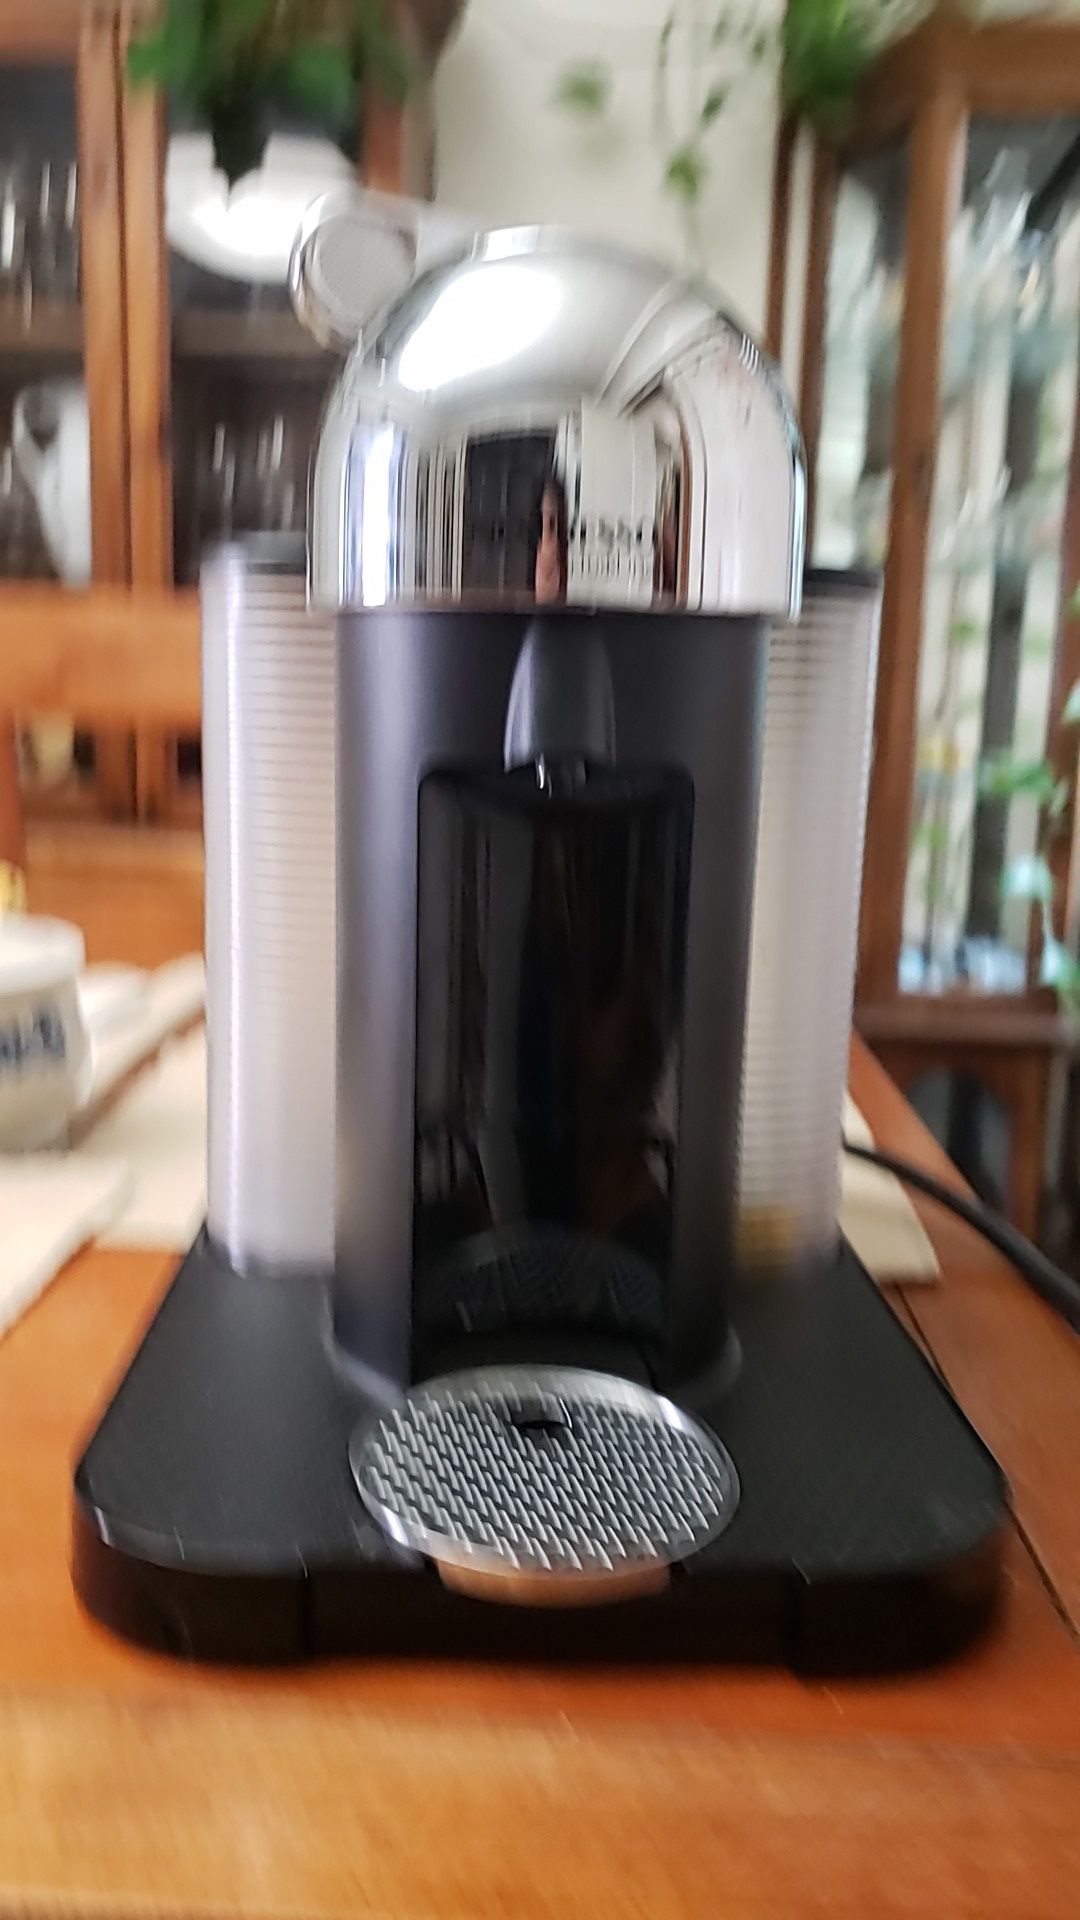 Nespresso vertuoline coffee maker